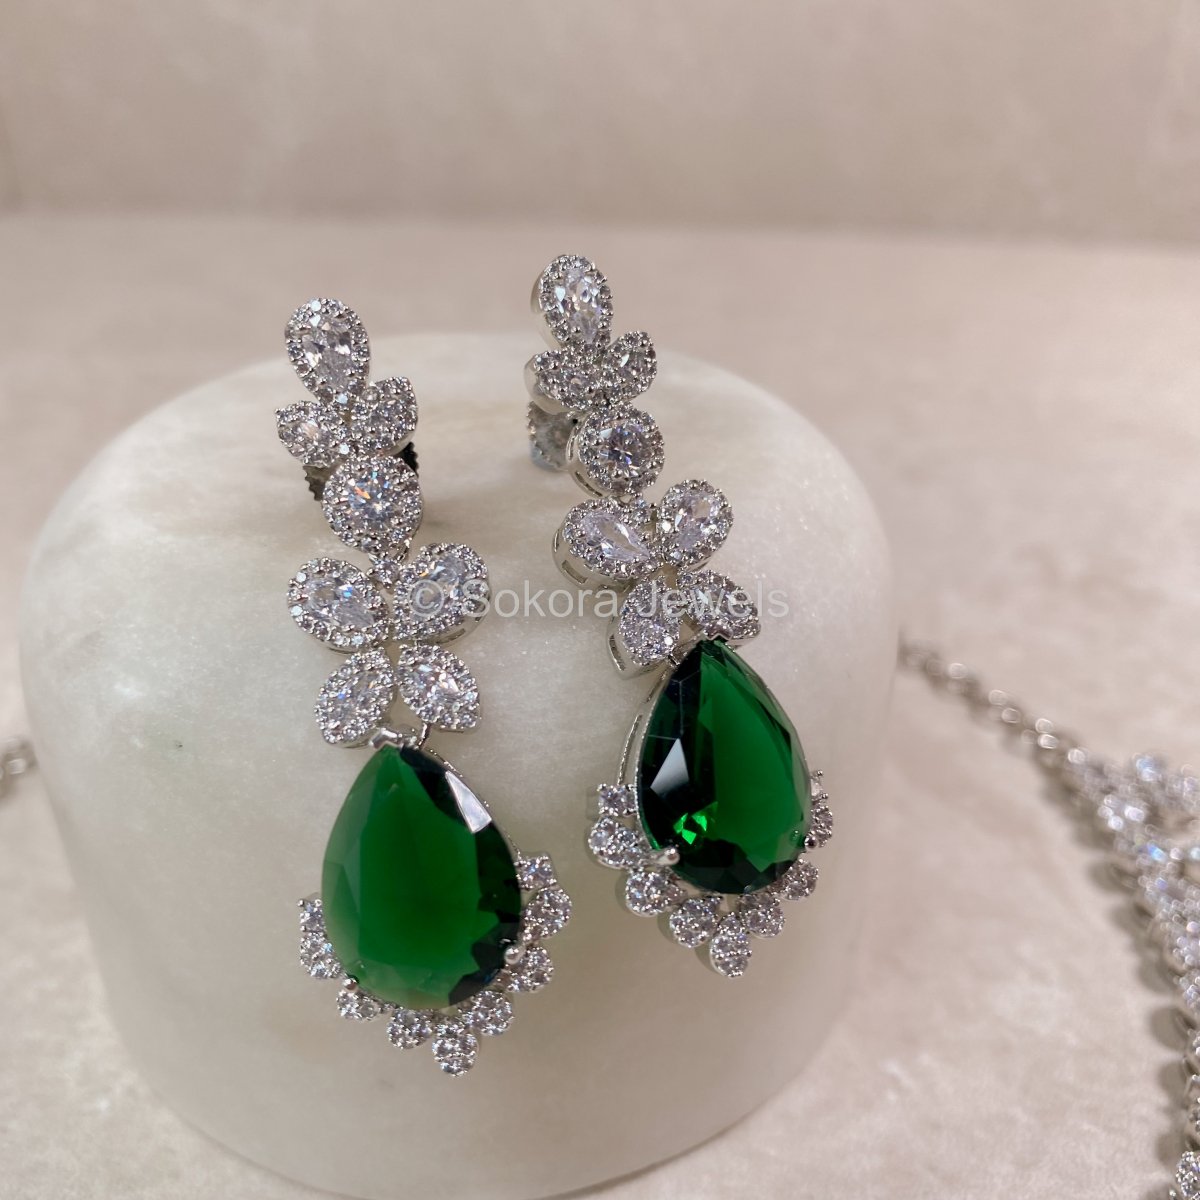 Argento Diamante Set - Green - SOKORA JEWELSArgento Diamante Set - GreenNECKLACE SETS